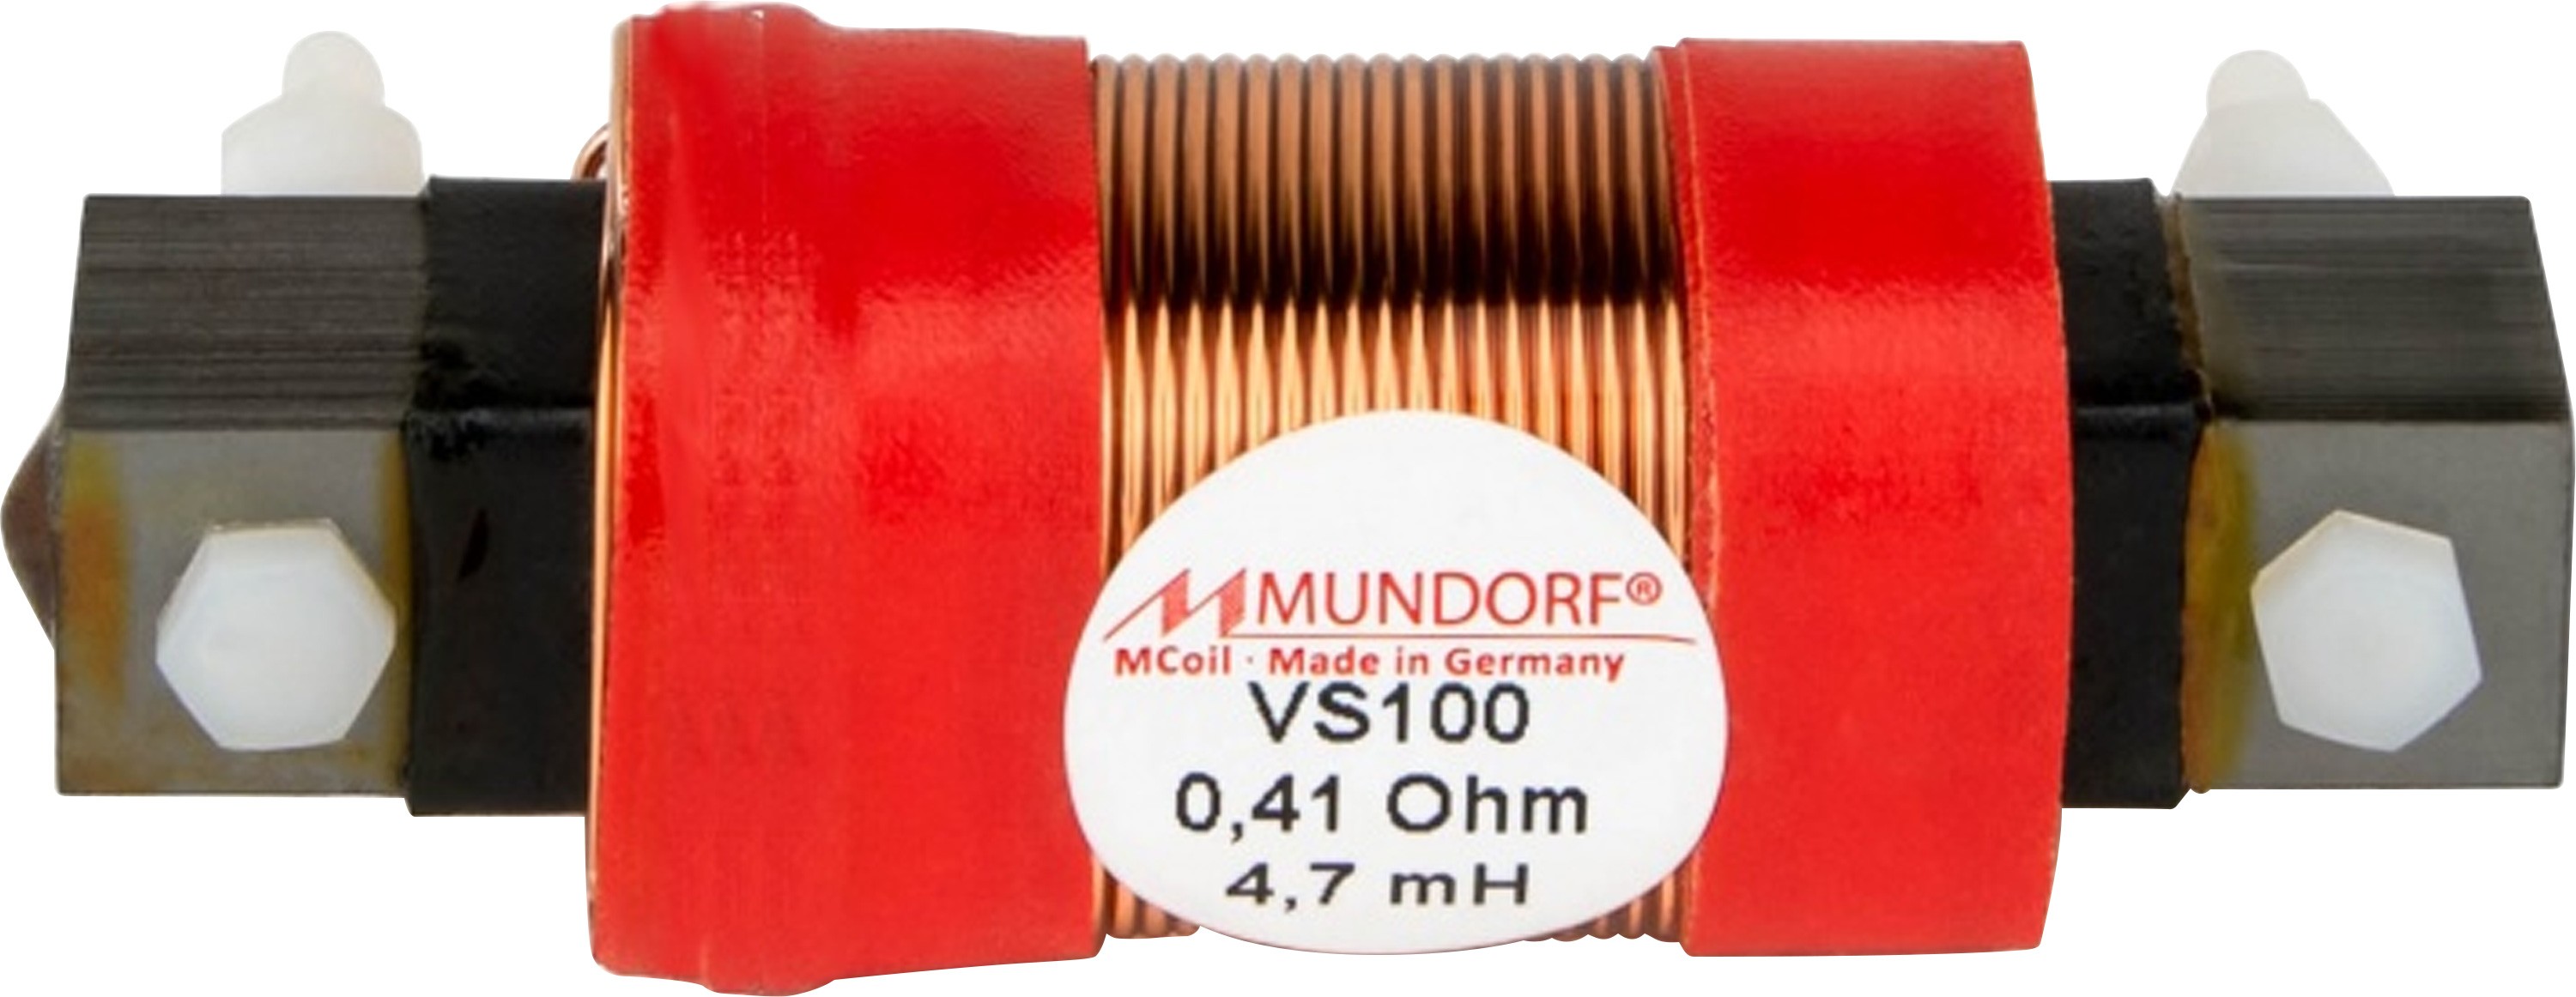 MUNDORF VS100-10 MCOIL ICORE Copper Coil Feron Core 10mH